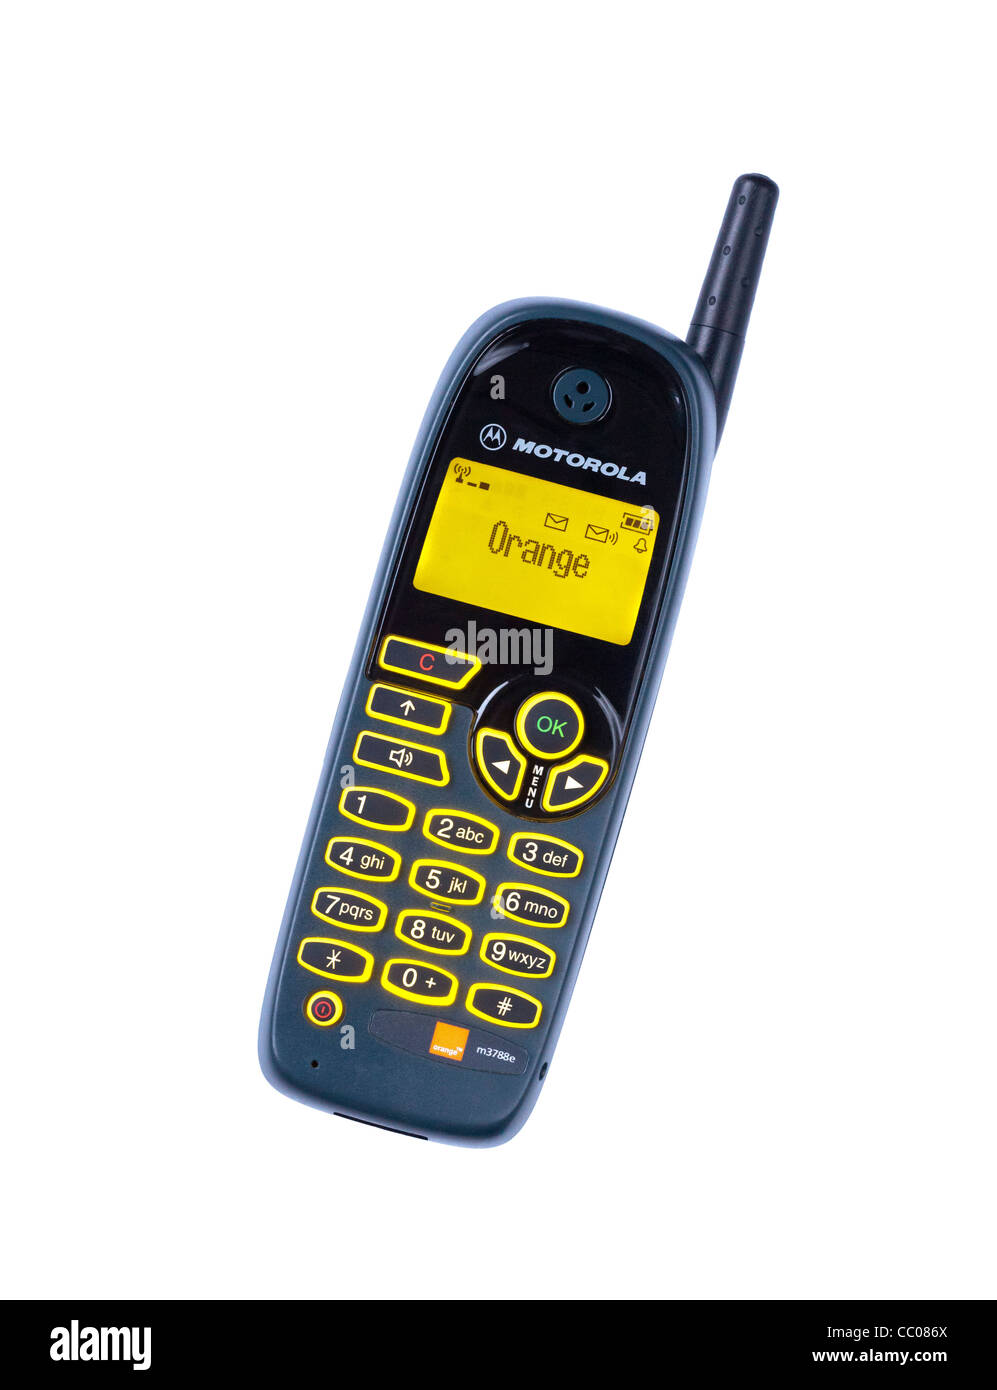 Il vecchio telefono cellulare Motorola da intorno all'anno 2000 Foto Stock